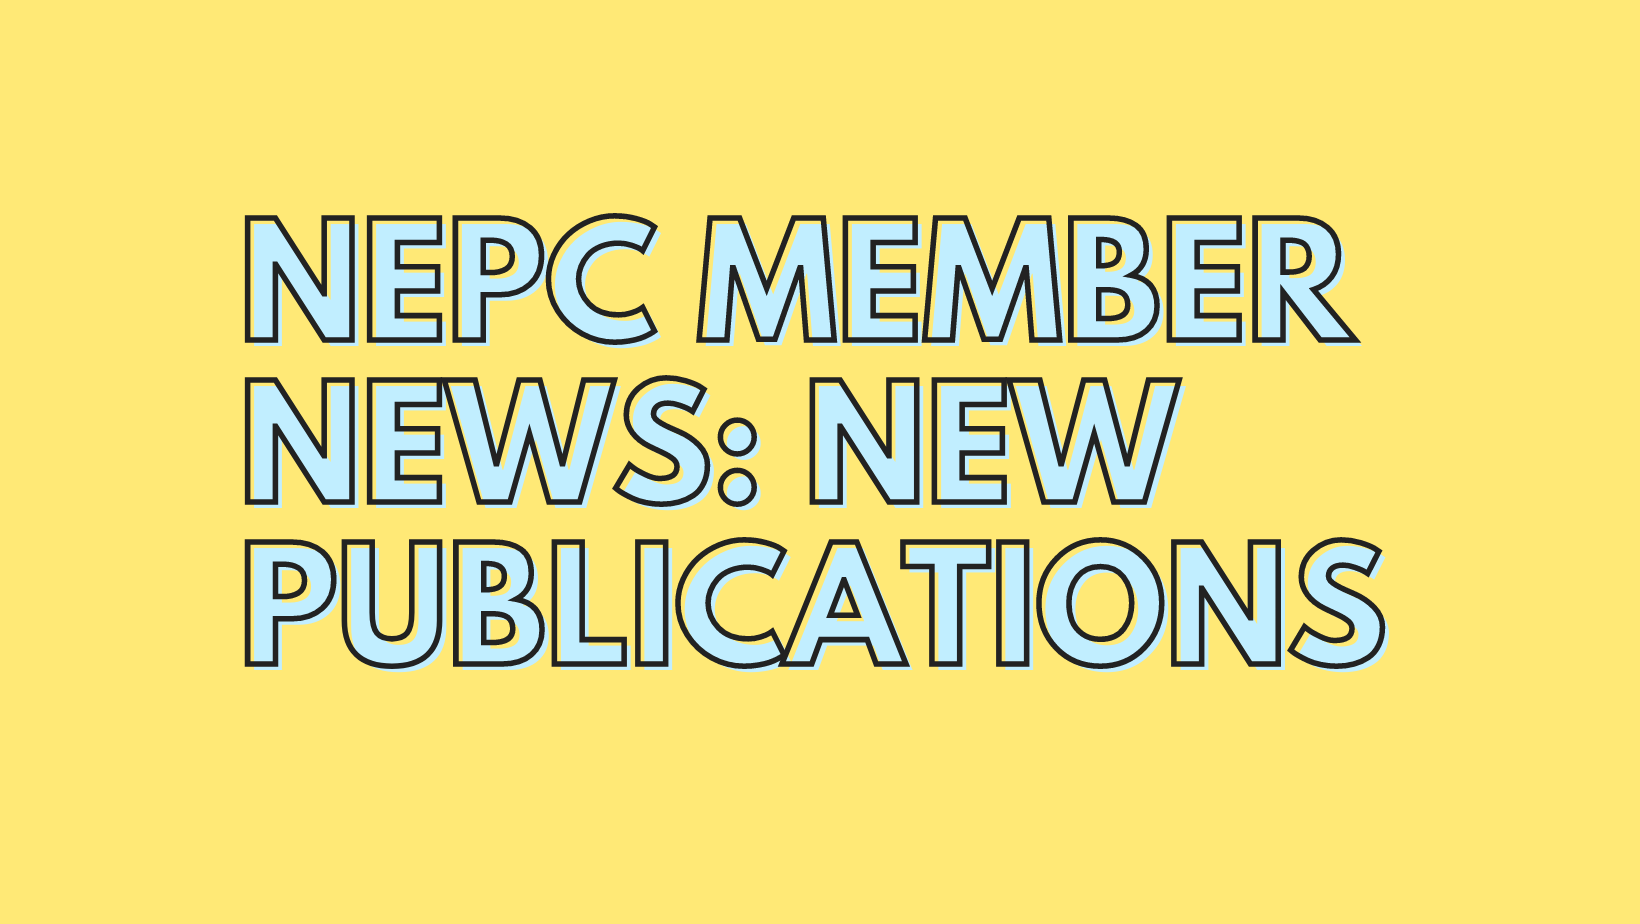 Member Publication News for June